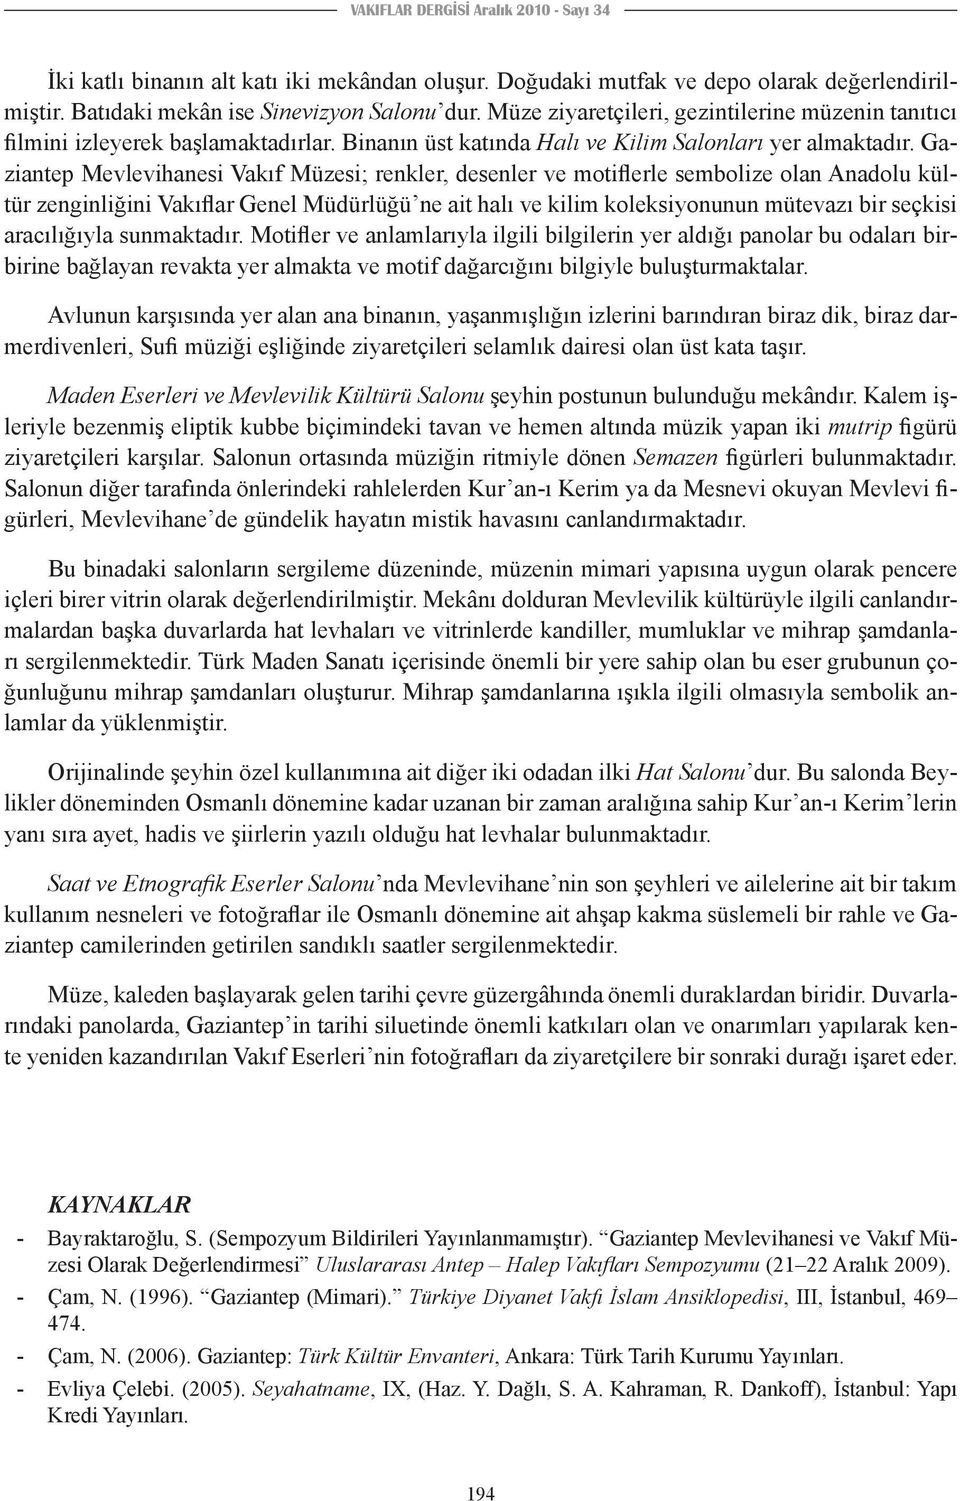 Gaziantep Mevlevihanesi Vakıf Müzesi; renkler, desenler ve motiflerle sembolize olan Anadolu kültür zenginliğini Vakıflar Genel Müdürlüğü ne ait halı ve kilim koleksiyonunun mütevazı bir seçkisi